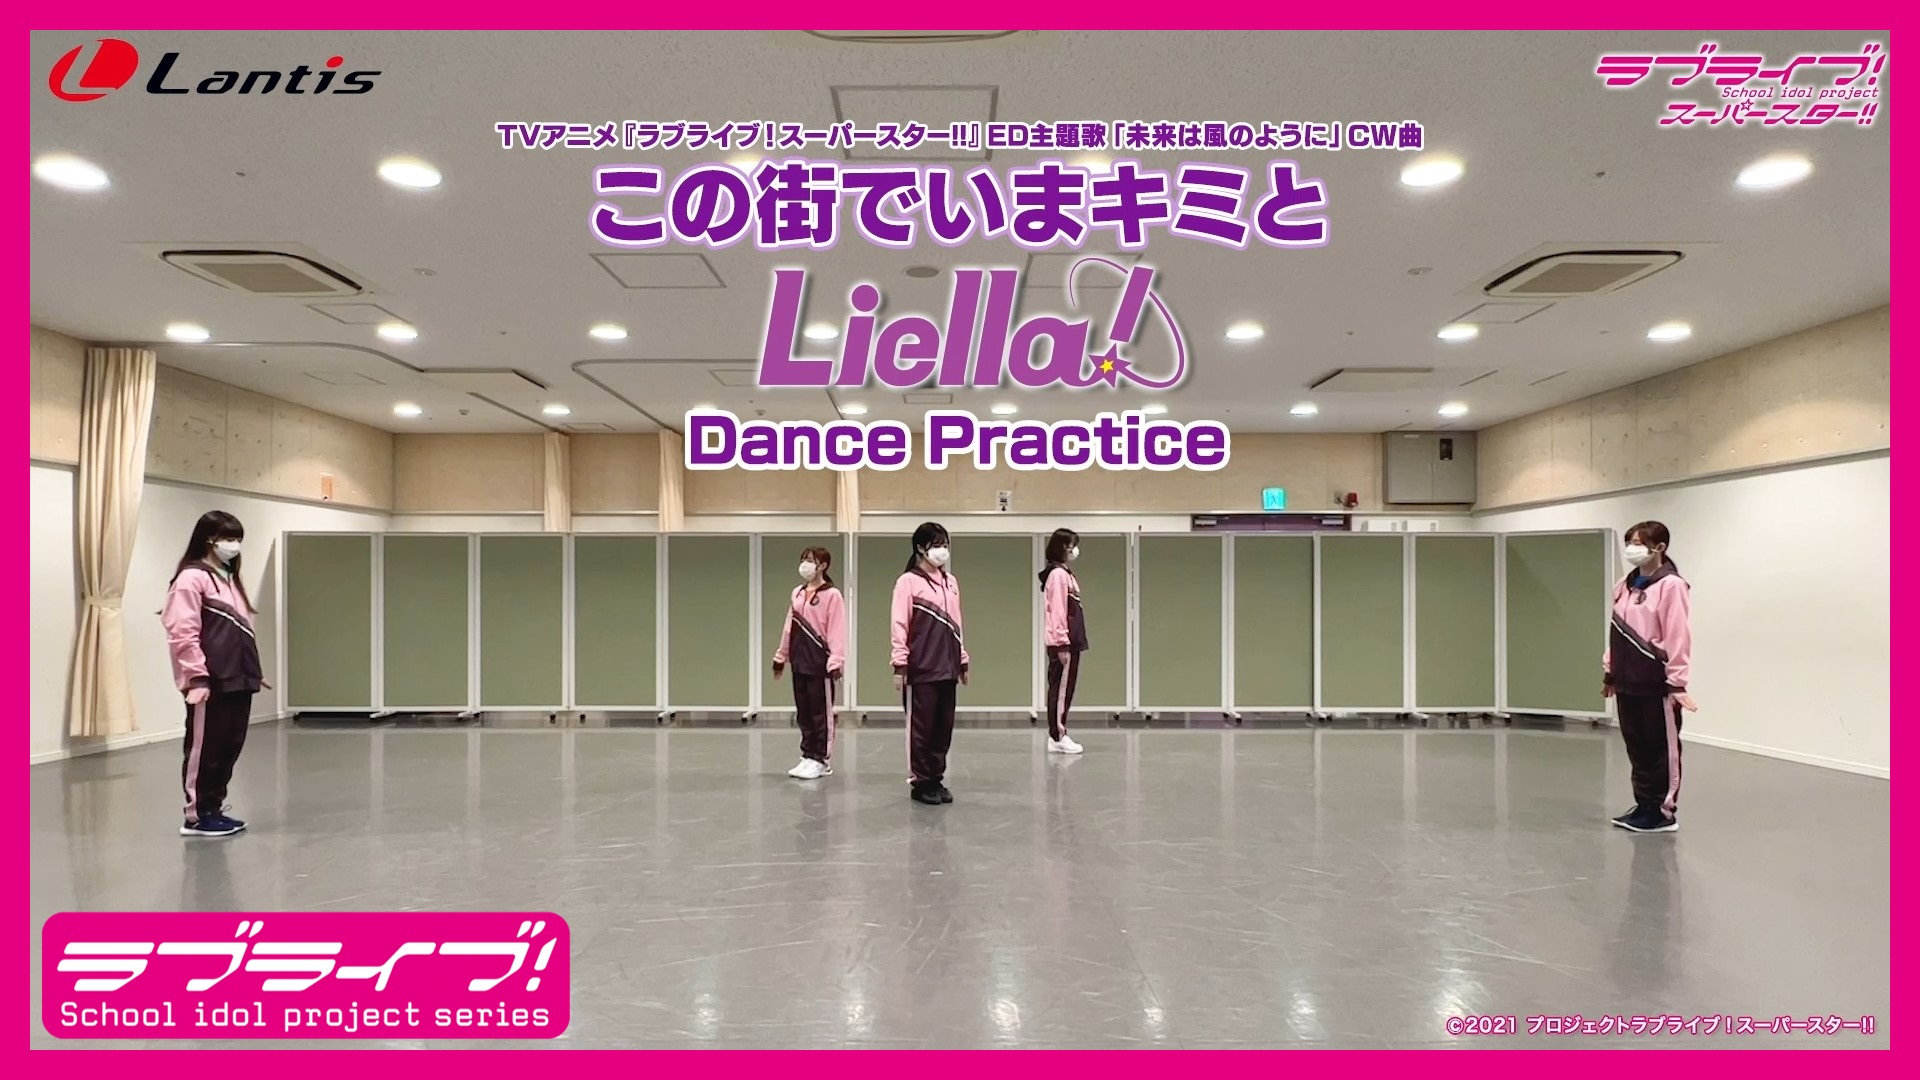 ラブライブ シリーズ公式 Dance Practice Liella 1stライブツアー開催中 東京追加公演 決定 Tvアニメ ラブライブ スーパースター Ed主題歌 未来は風のように Cw曲 この街でいまキミと Dance Practice公開 T